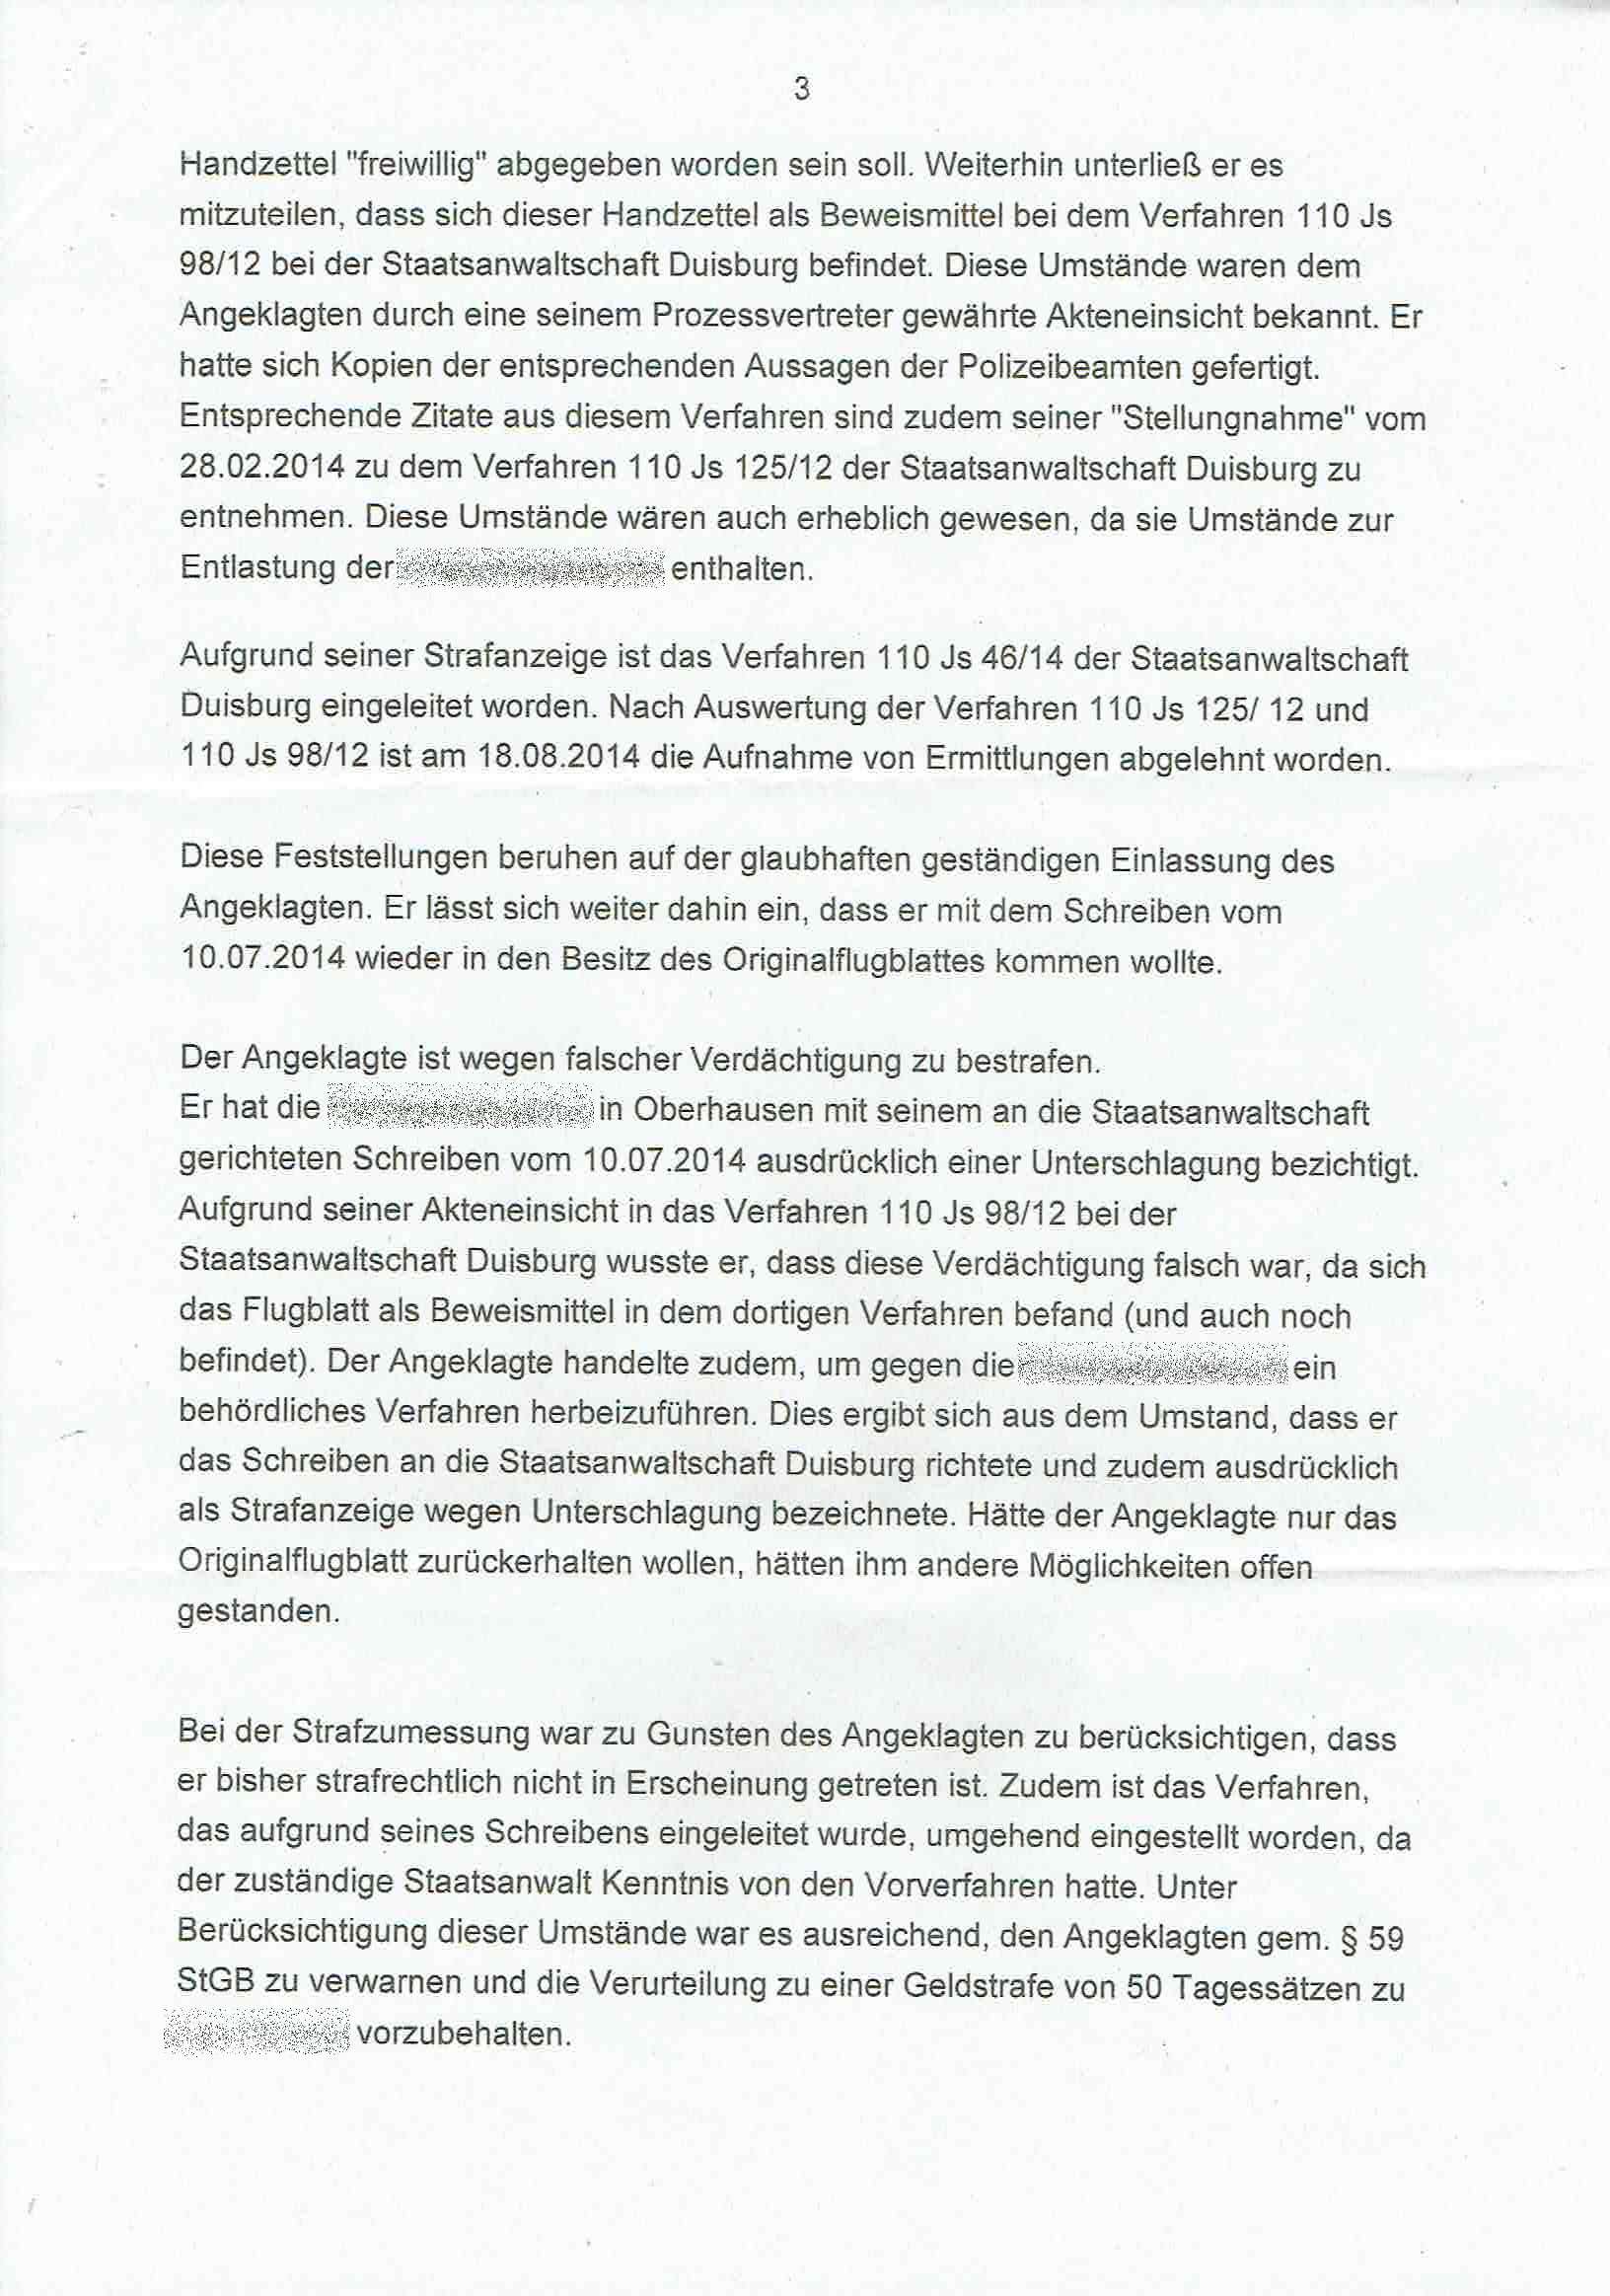 Antwort des Direktors des Amtsgerichts Duisburg vom 19.09.2017, Seite 5